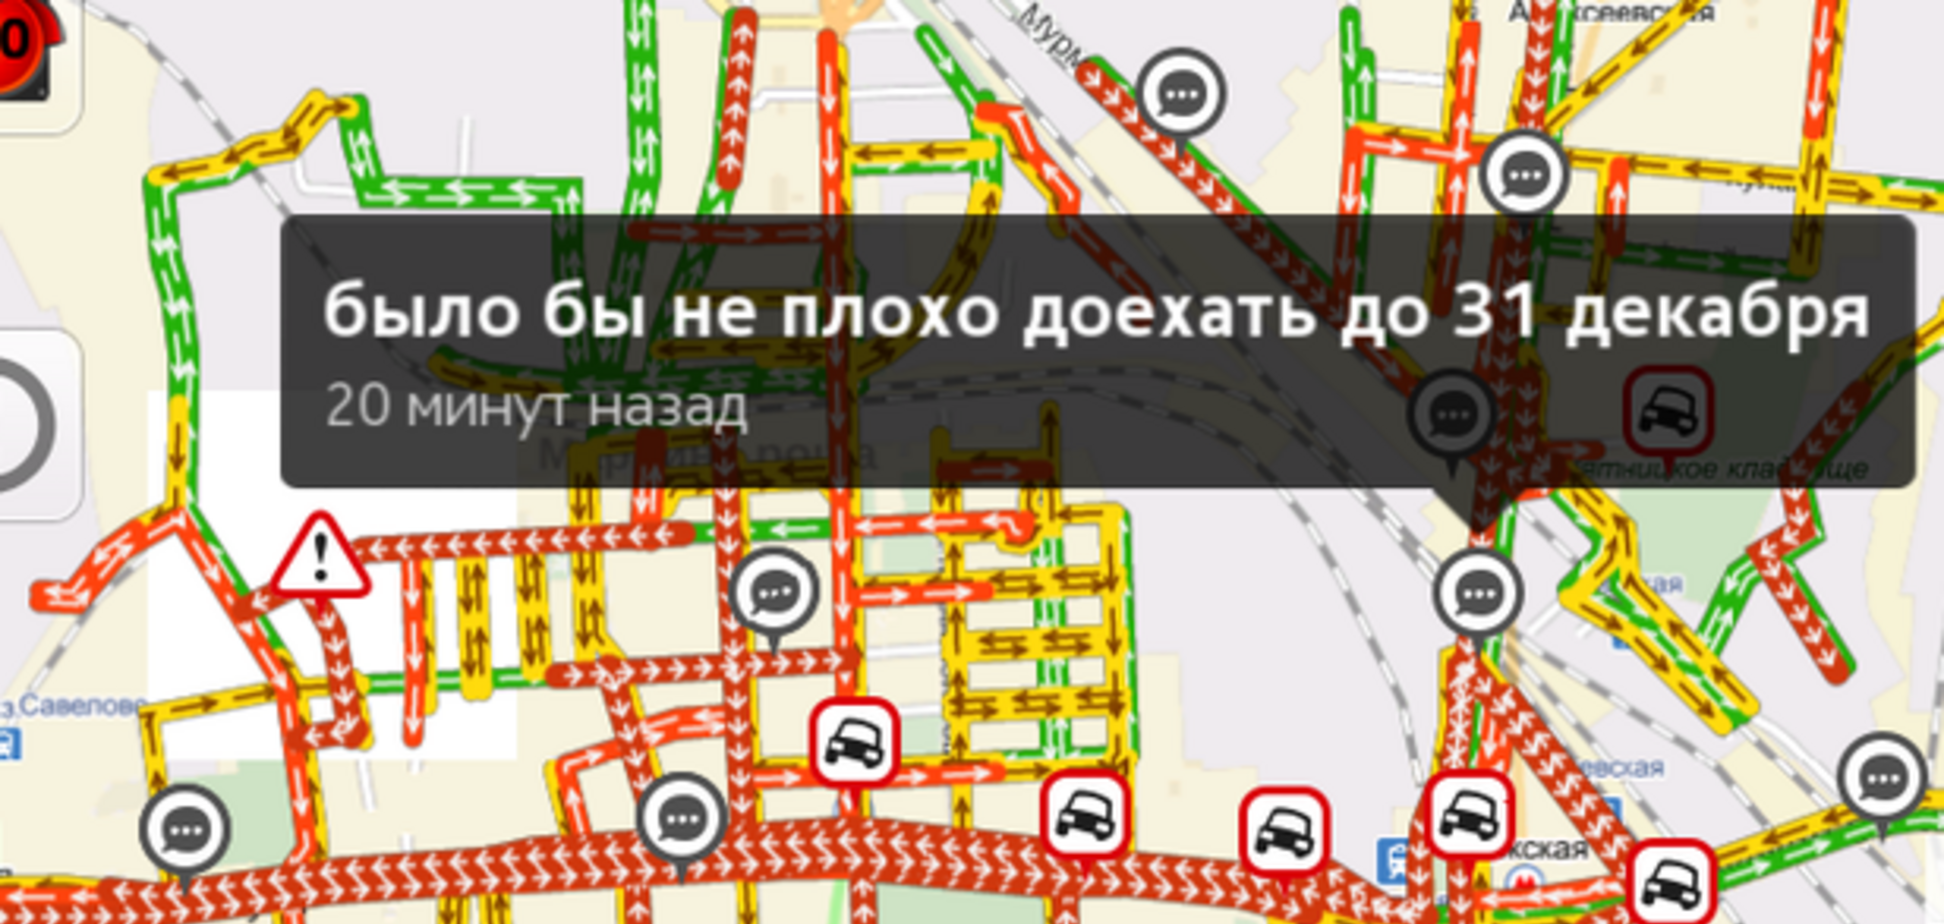 Как развлекаются водители в Москве, застрявшие в пробках: забавные комментарии   